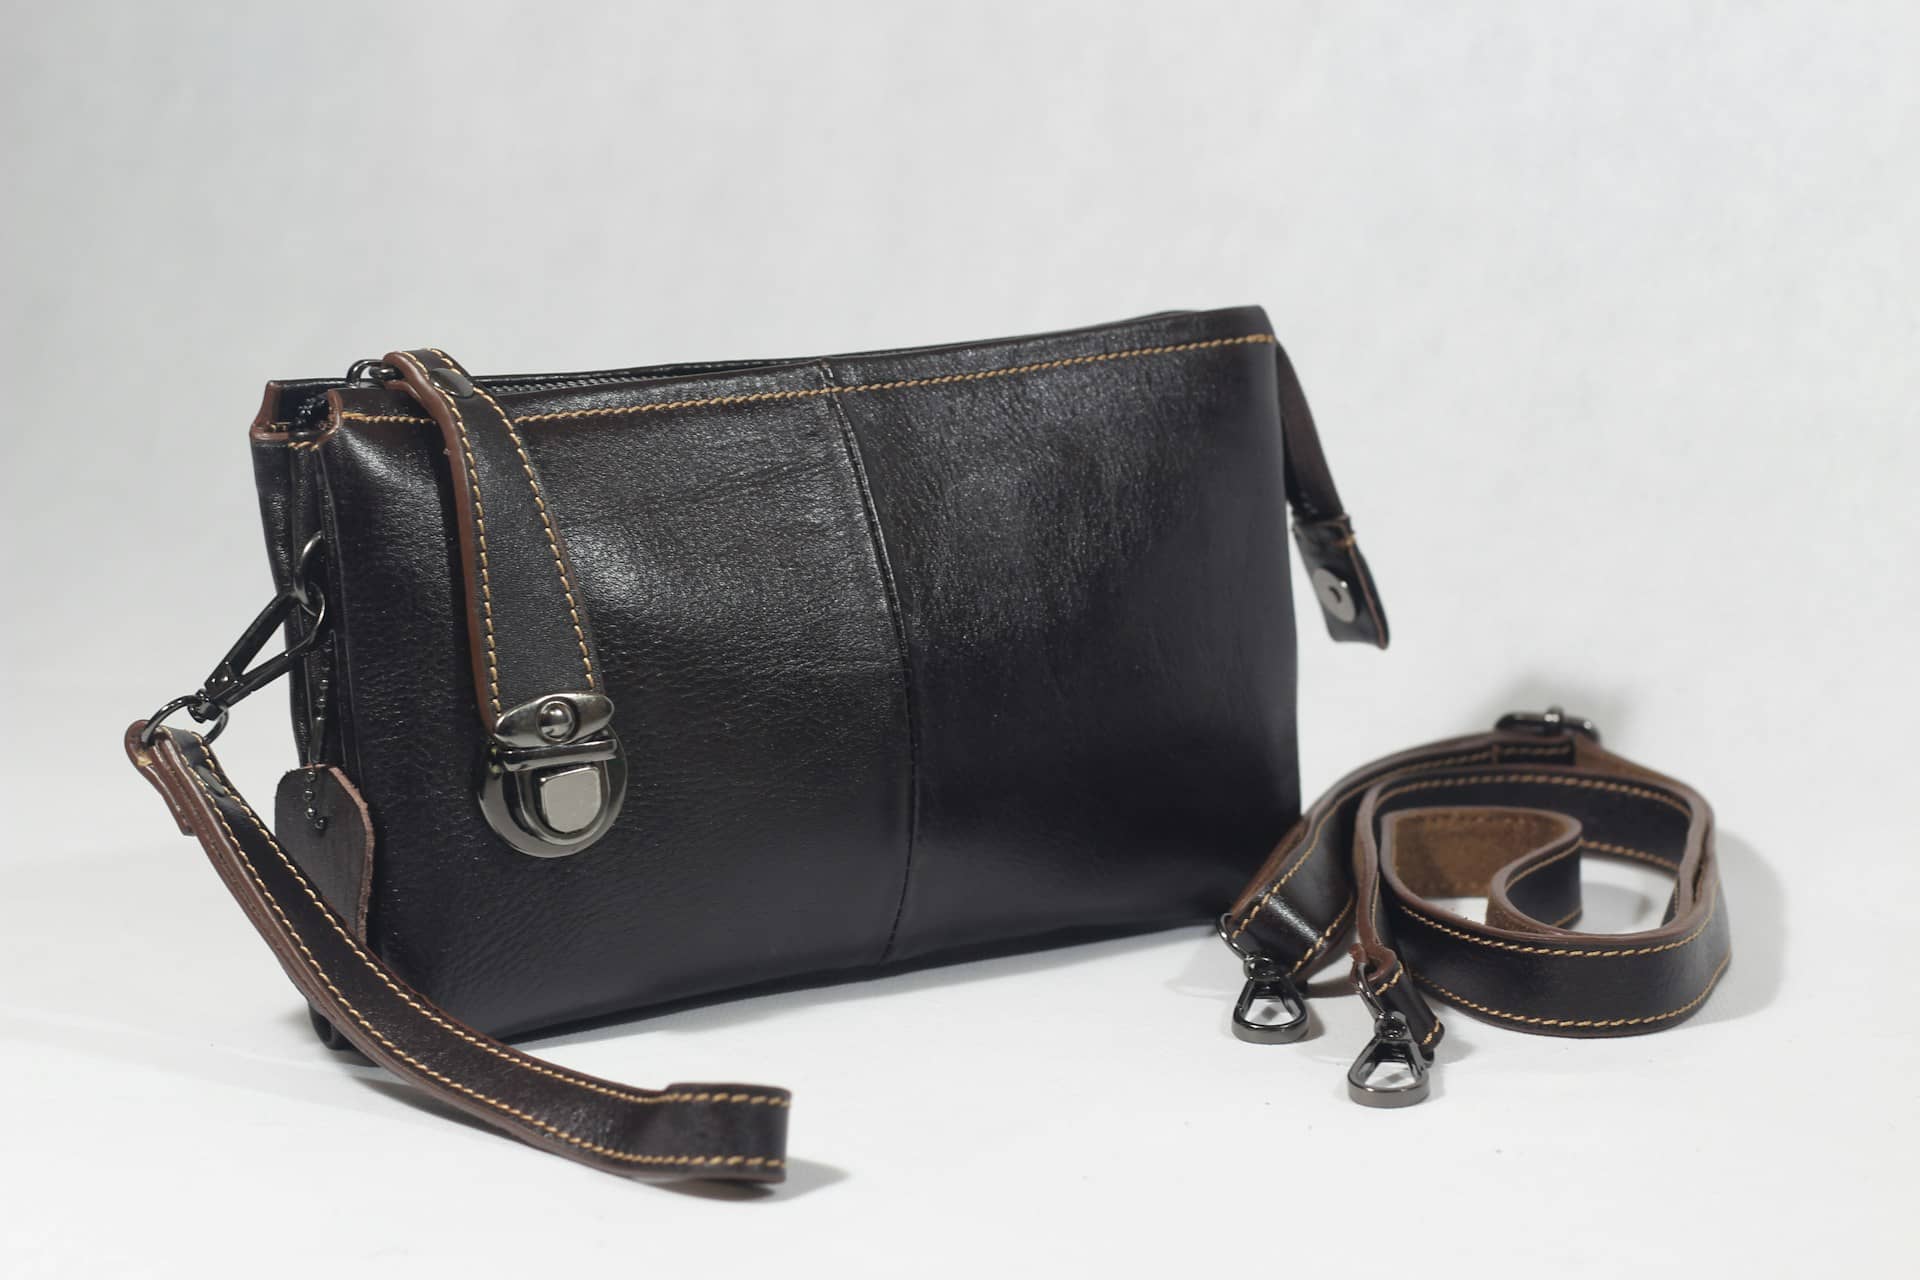 Black Handbag and detached straps beside it